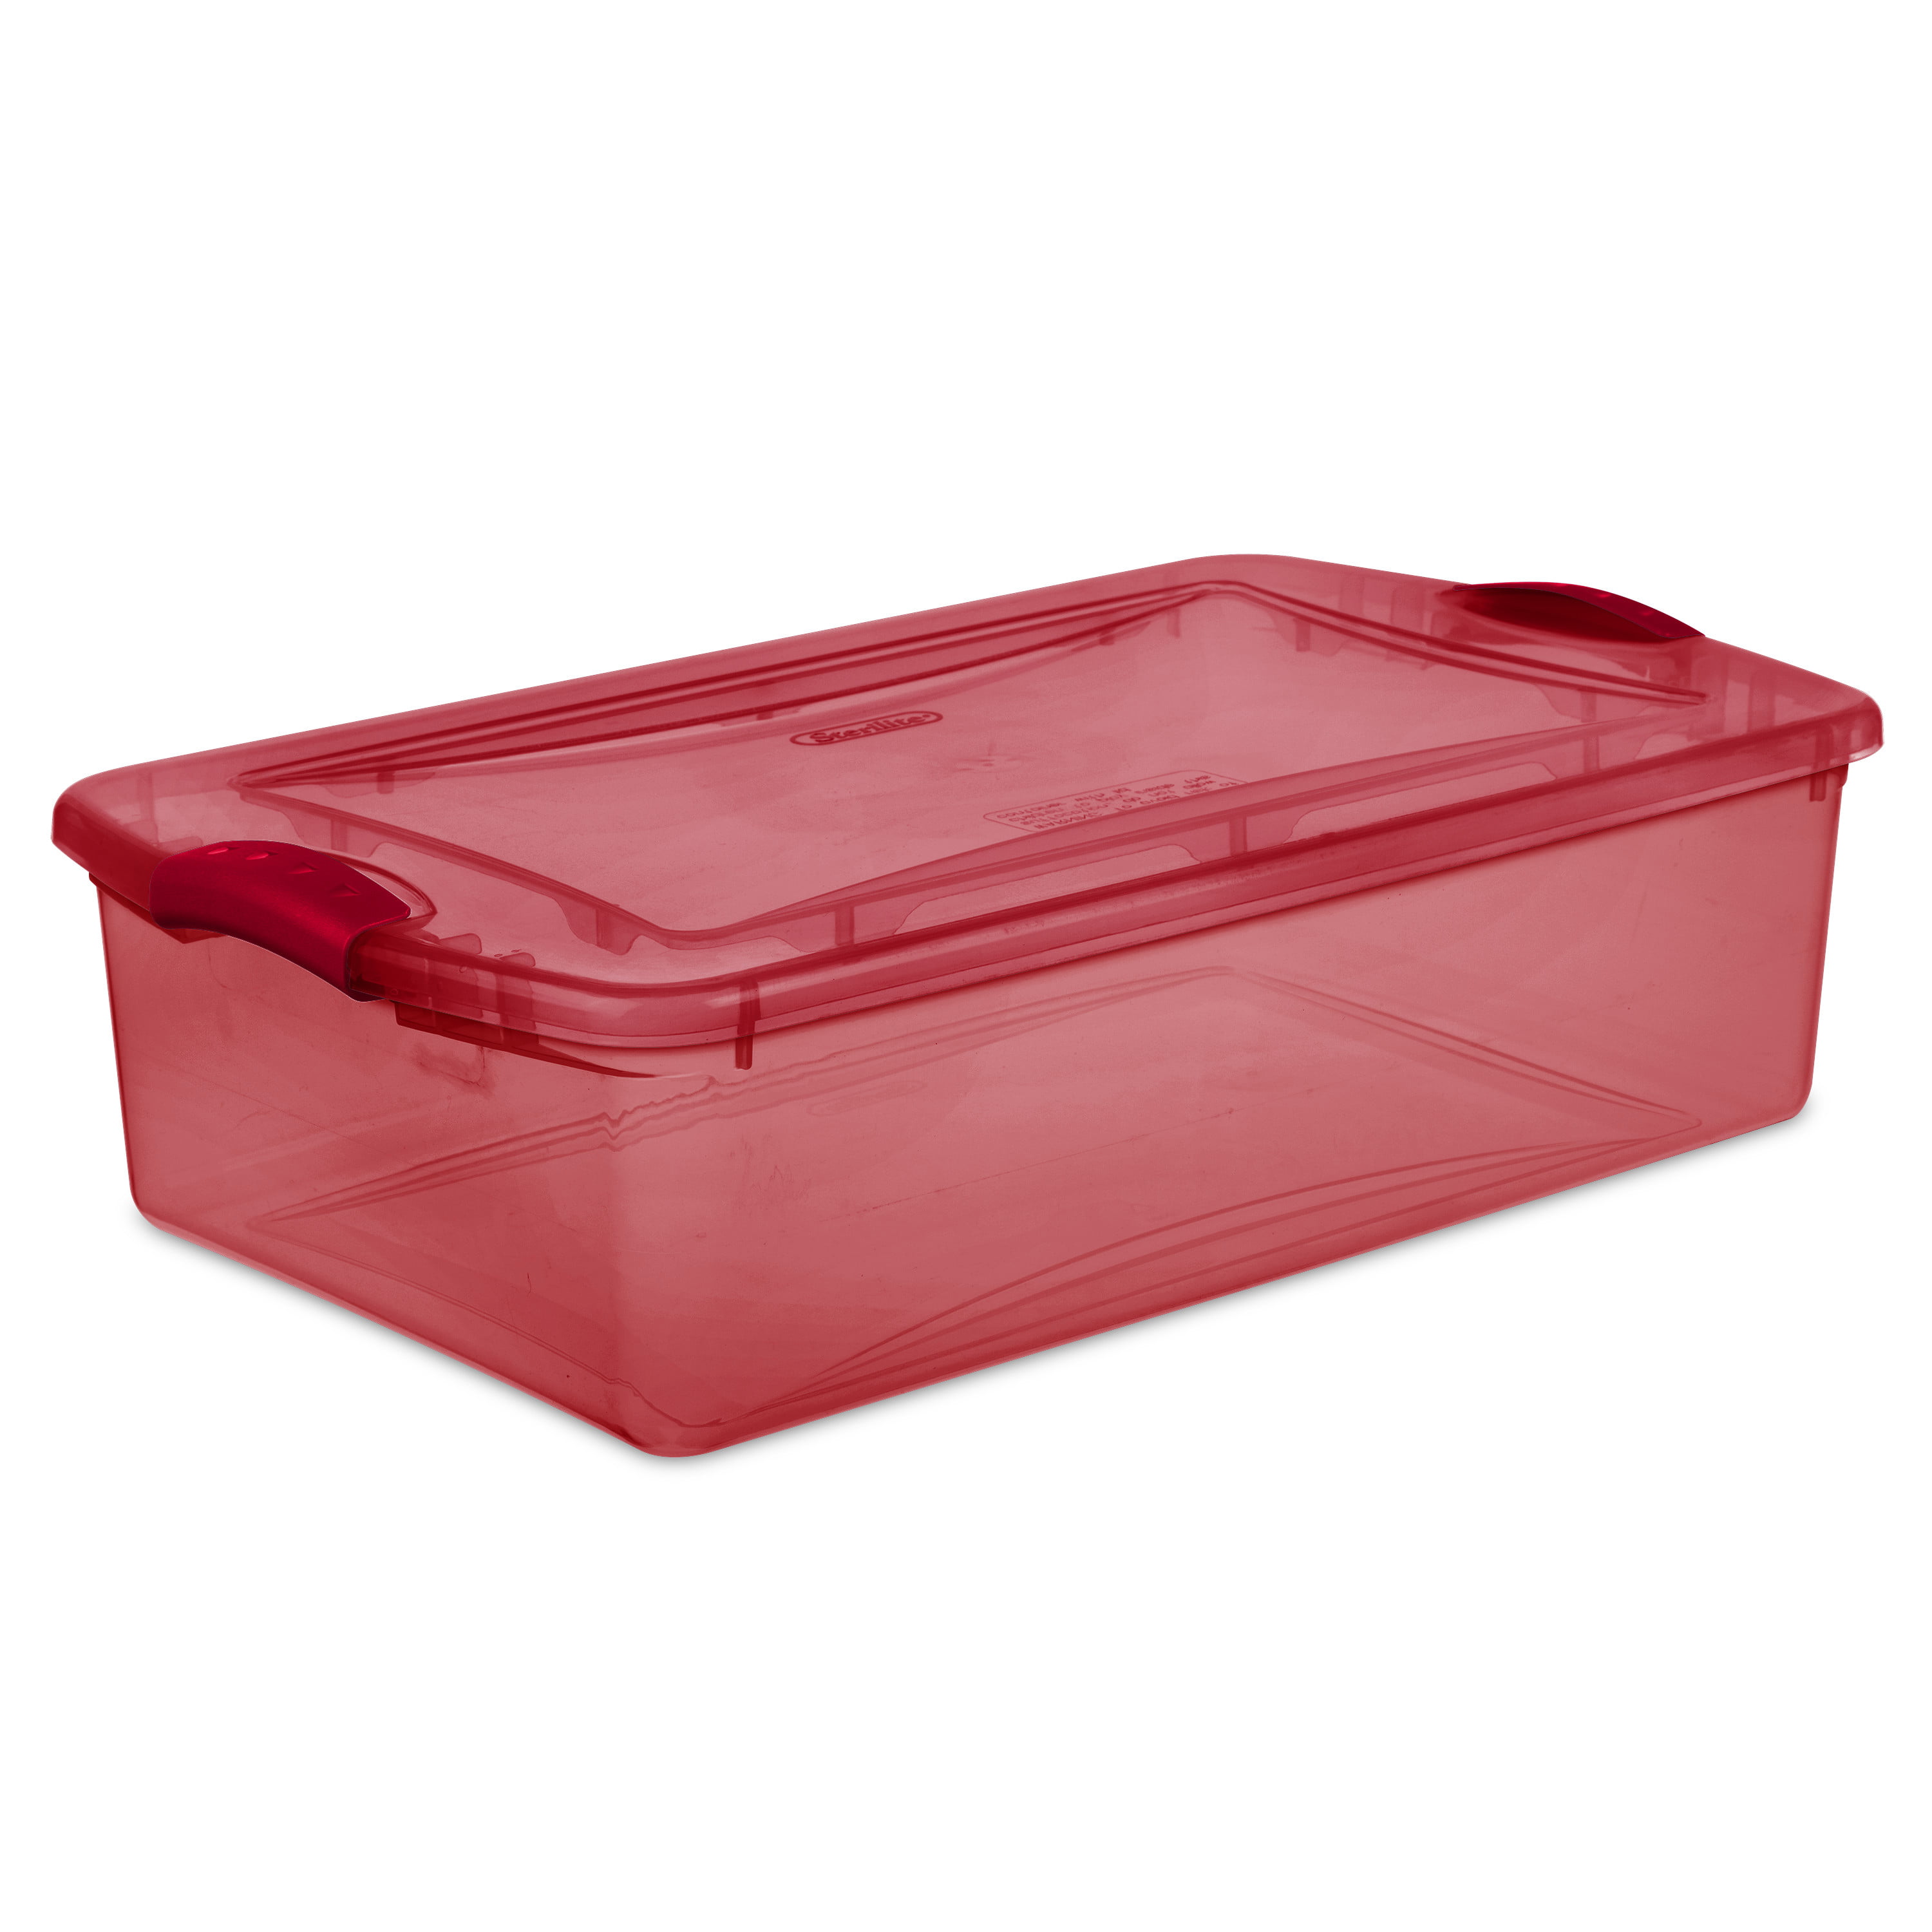 Sterilite Plastic 32 Qt. Latch Box Really Red Tint – Walmart